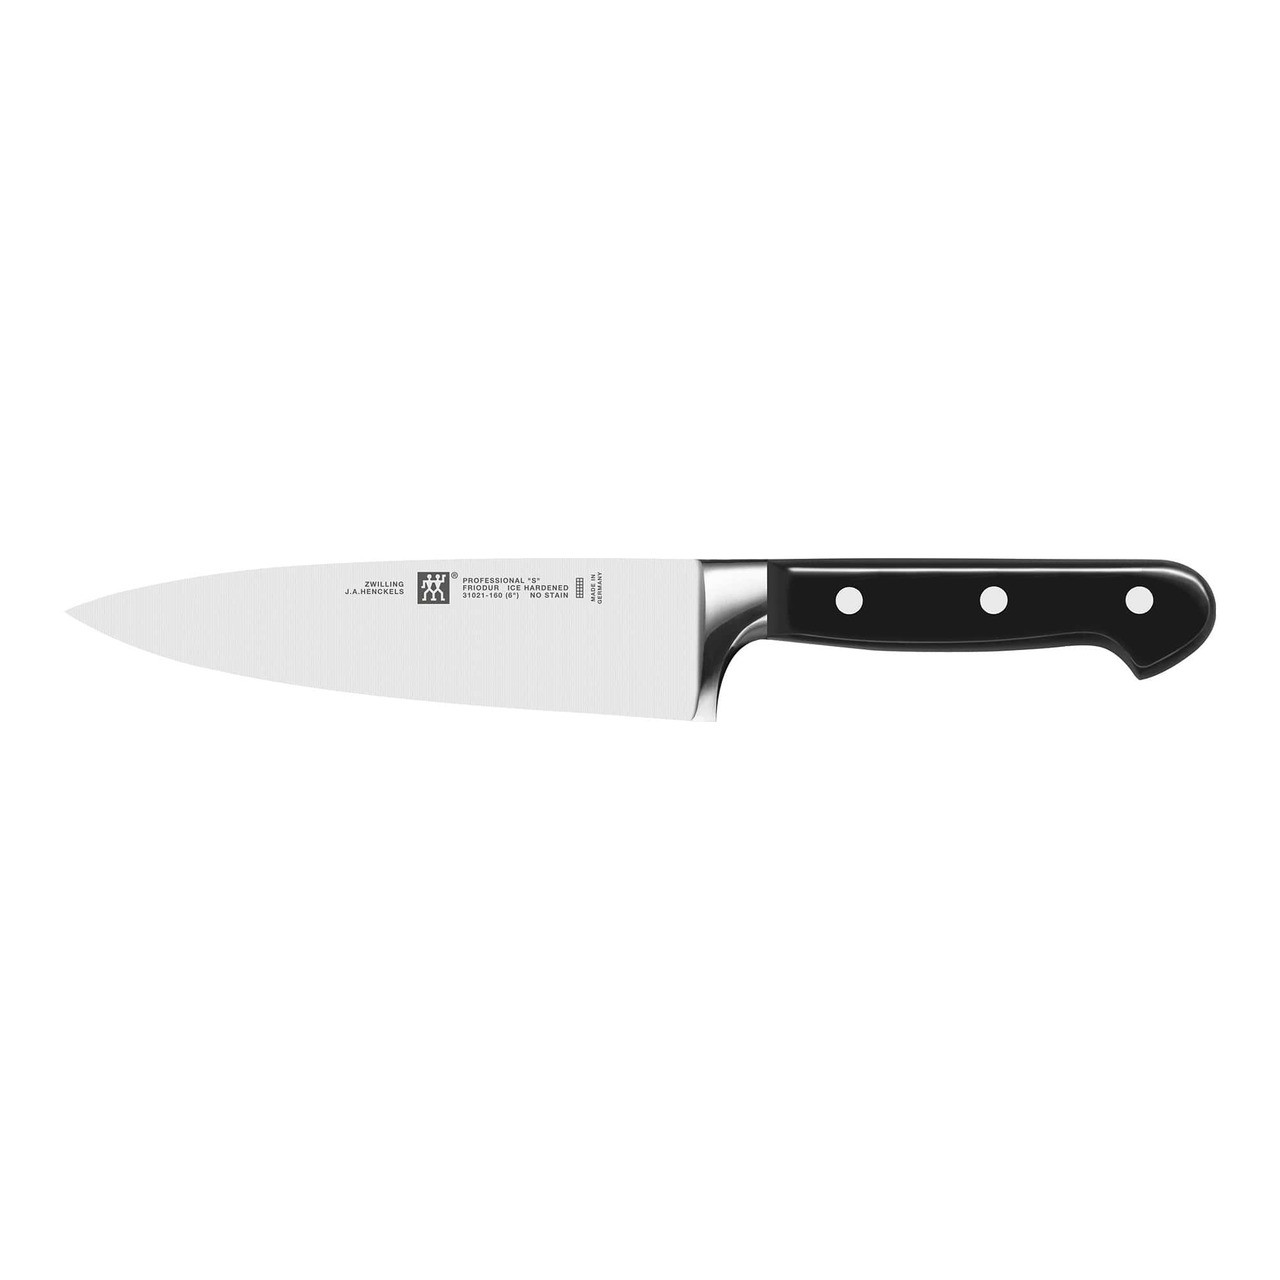 Knife Sharpener Zwilling J.A.Henckels 32604-000-0 for sale